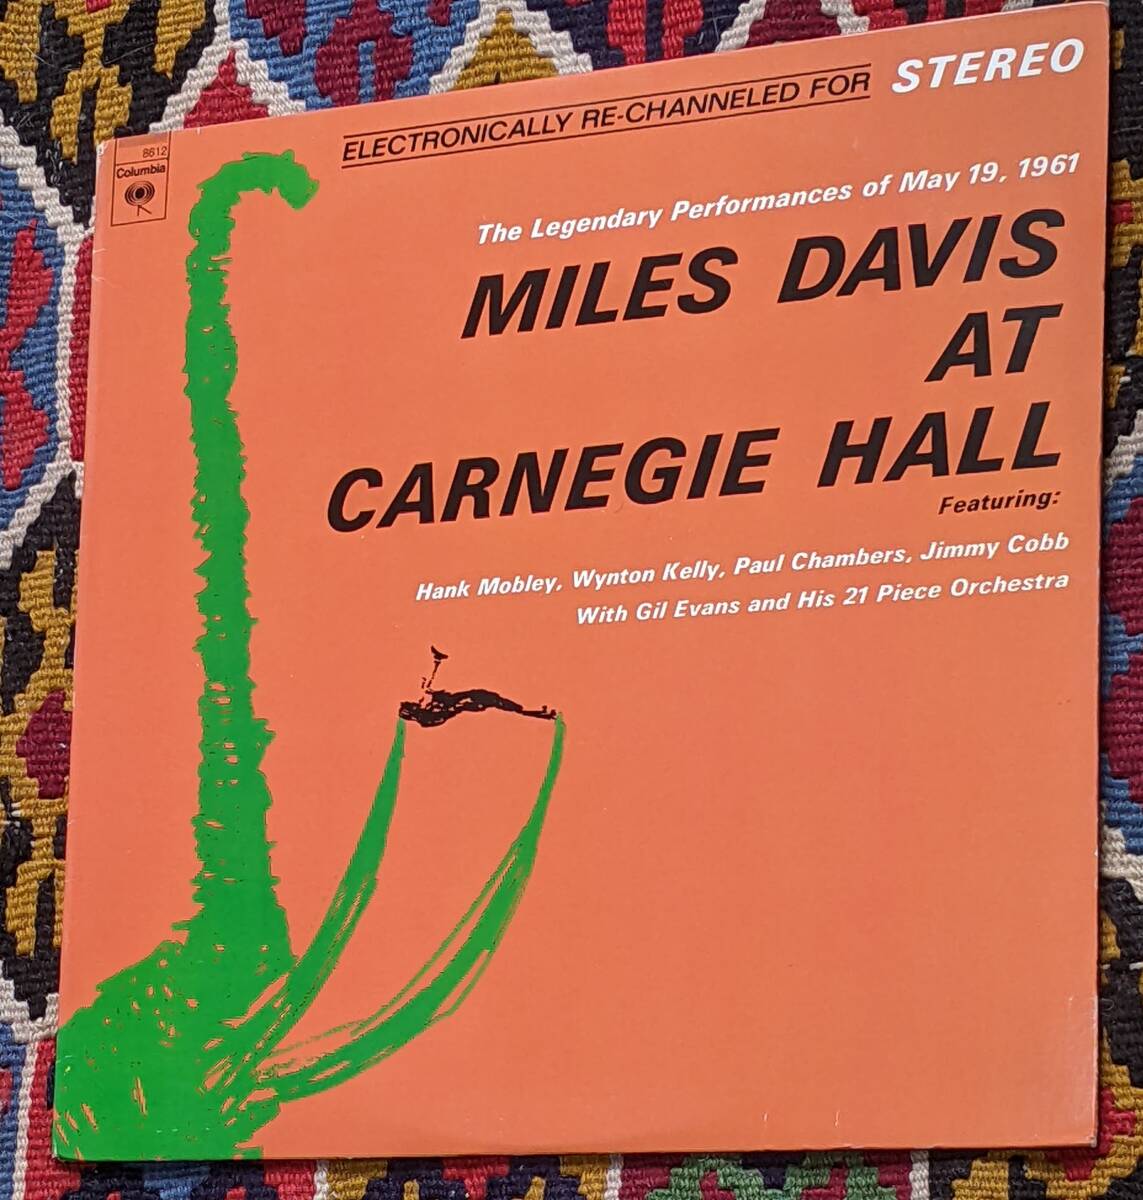 60's マイルス・デイヴィス ギル・エヴァンス (US盤 LP)/ アット・カーネギー・ホール Miles Davis At Carnegie Hall PC 8612 1961年_画像6